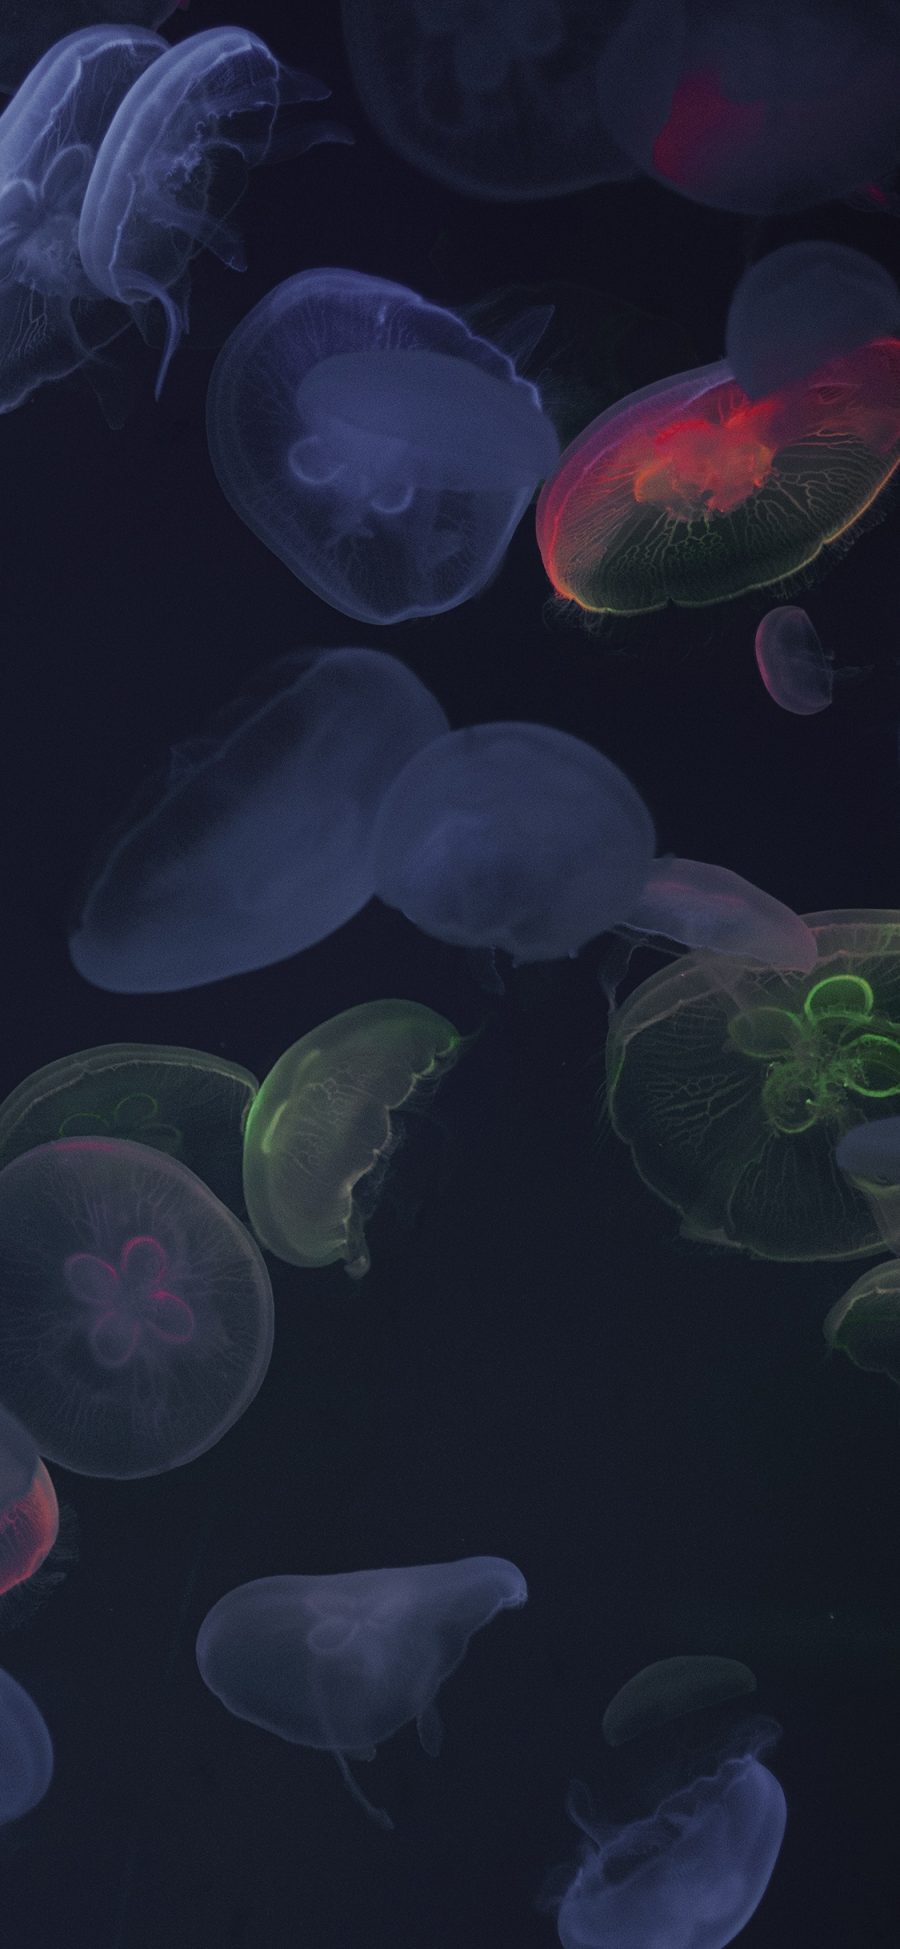 [2436×1125]水母 浮游 透明 密集 苹果手机壁纸图片